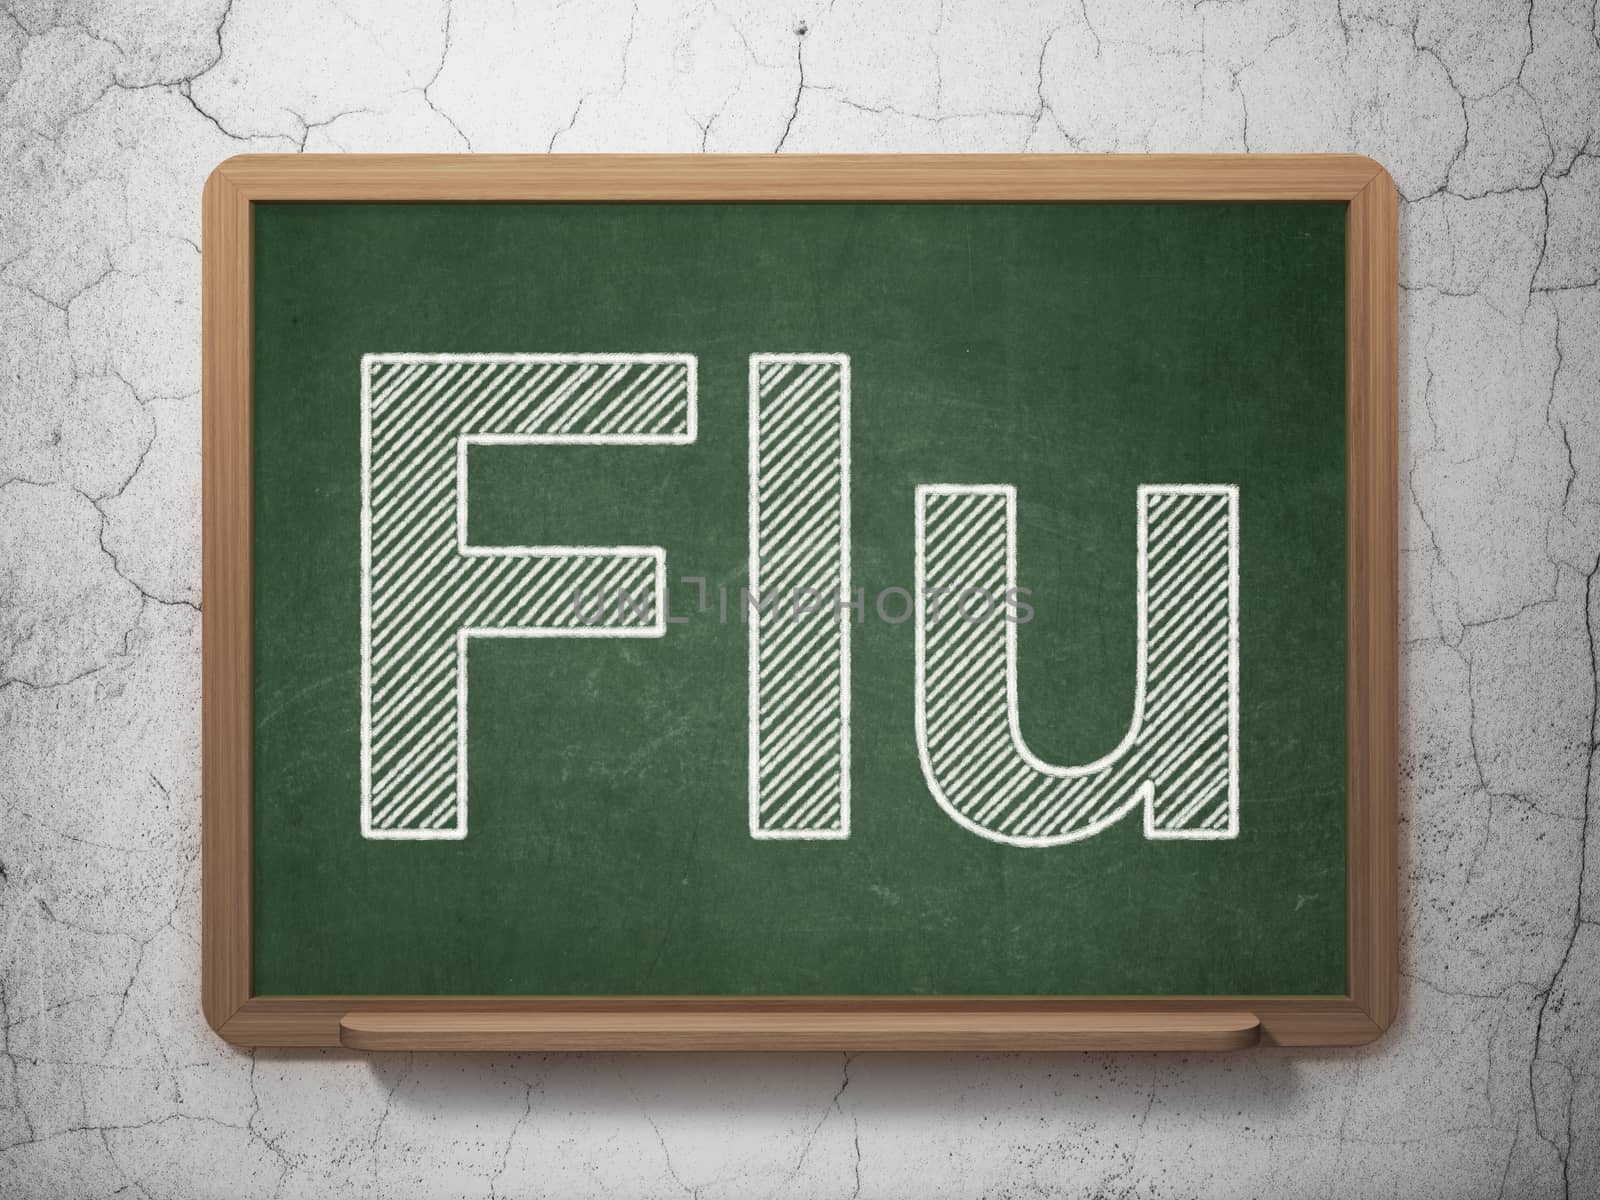 Medicine concept: Flu on chalkboard background by maxkabakov